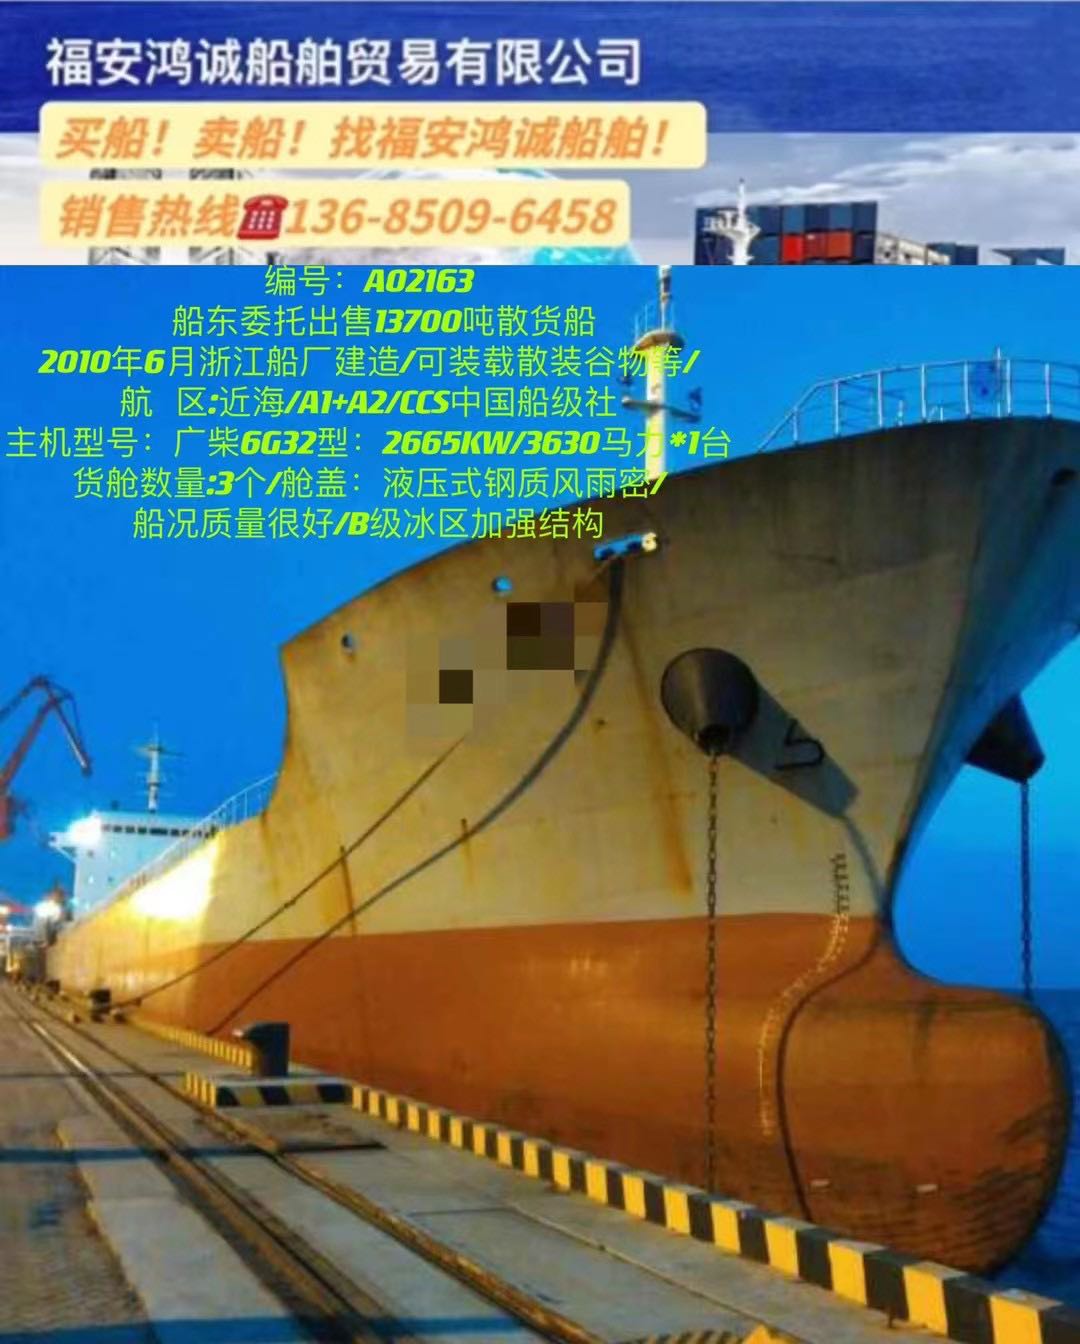 出售2010年13700吨散货船